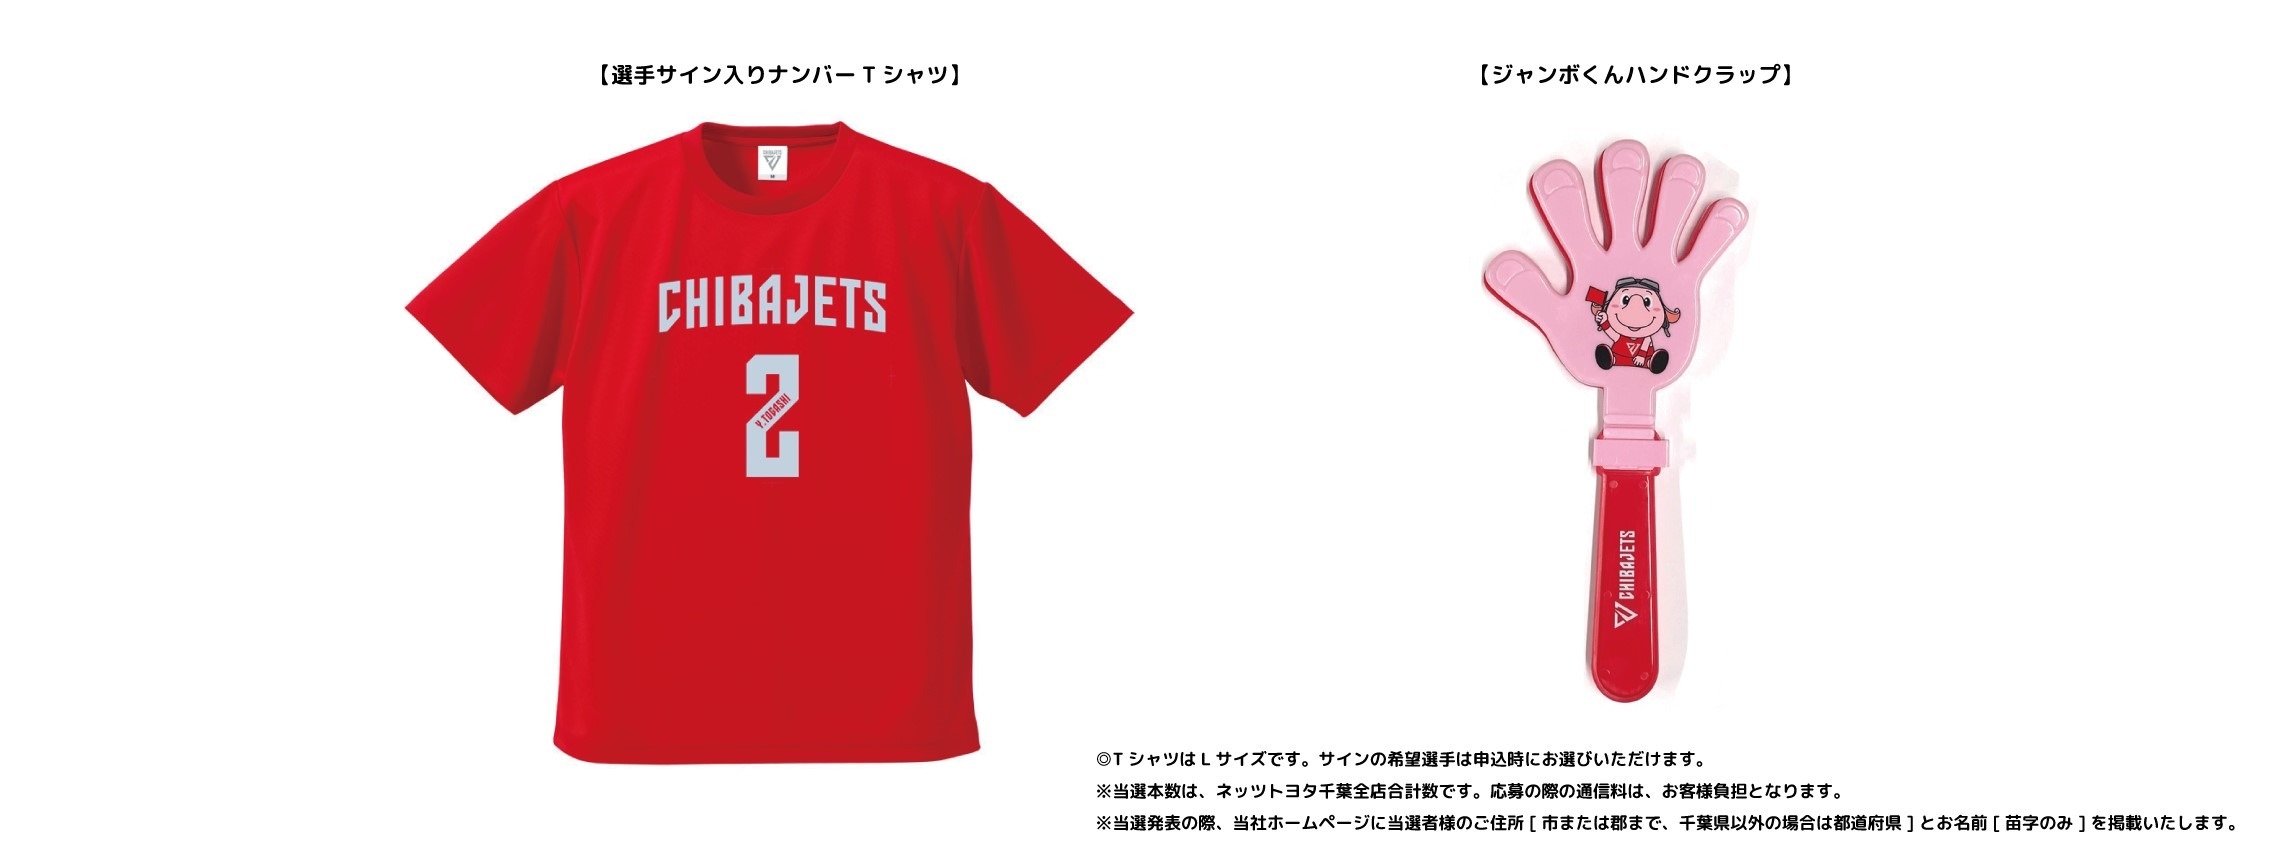 引き出物 千葉ジェッツ 富樫勇樹選手 UAナンバーTシャツ Lサイズ